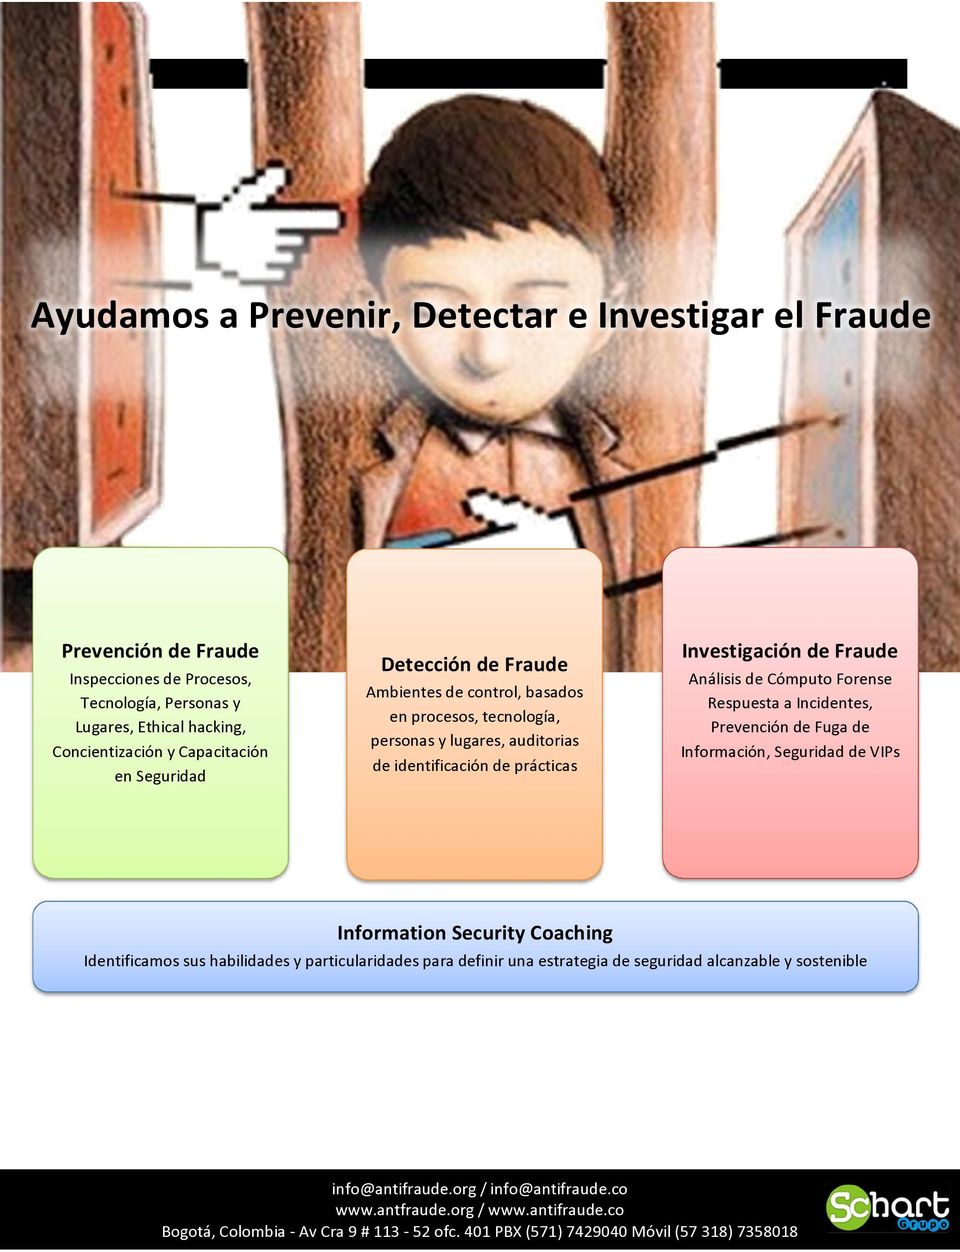 Investigación de Fraude Análisis de Cómputo Forense Respuesta a Incidentes, Prevención de Fuga de Información, Seguridad de VIPs Information Security Coaching